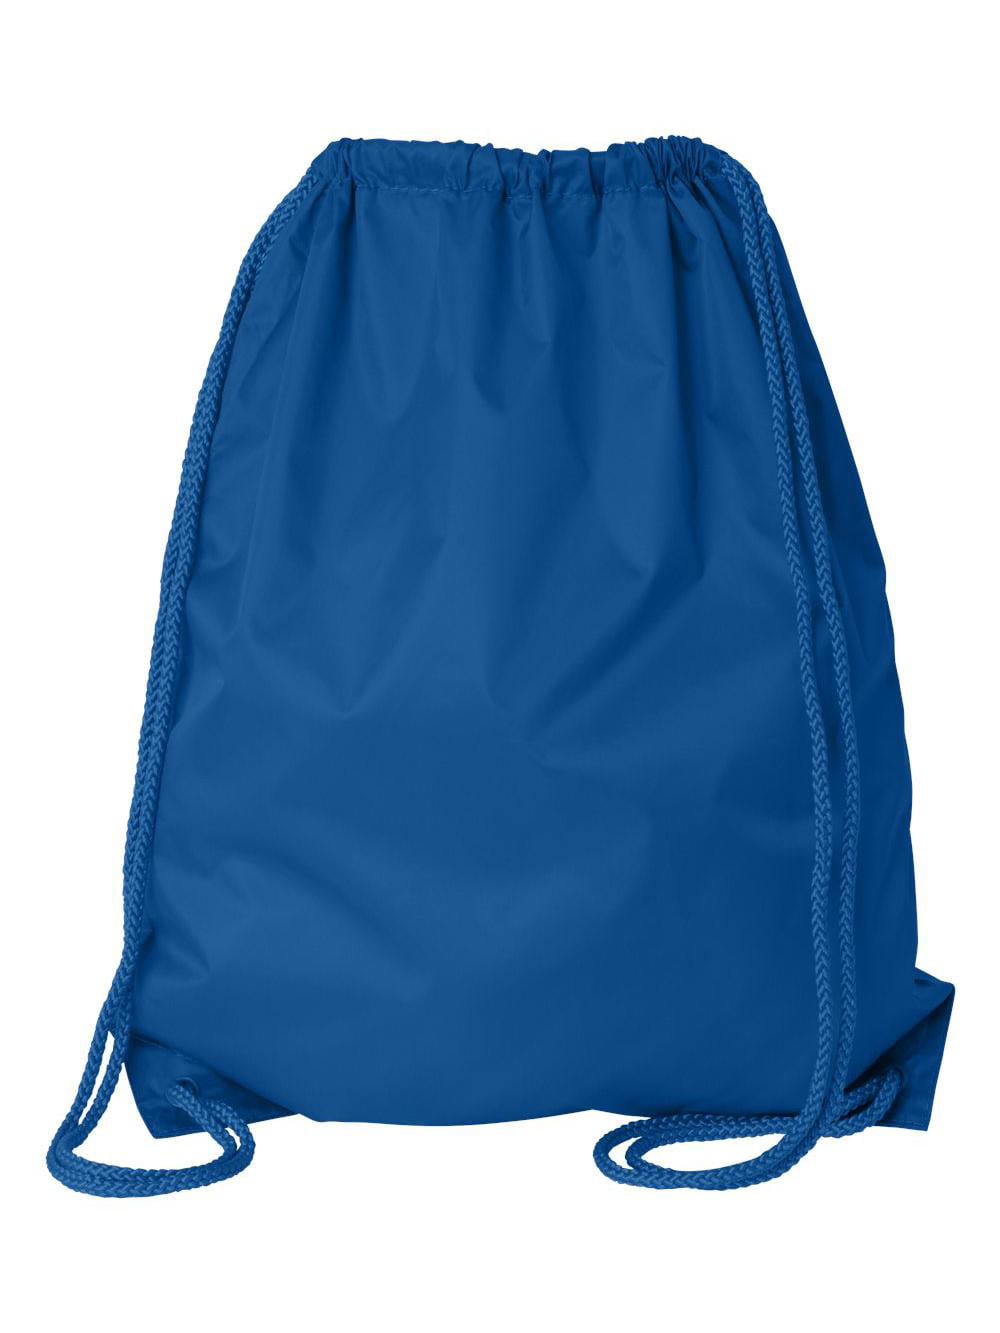 Royal Blue Details about   TYR Alliance Mesh Equipment Bag Shoulder Pack 